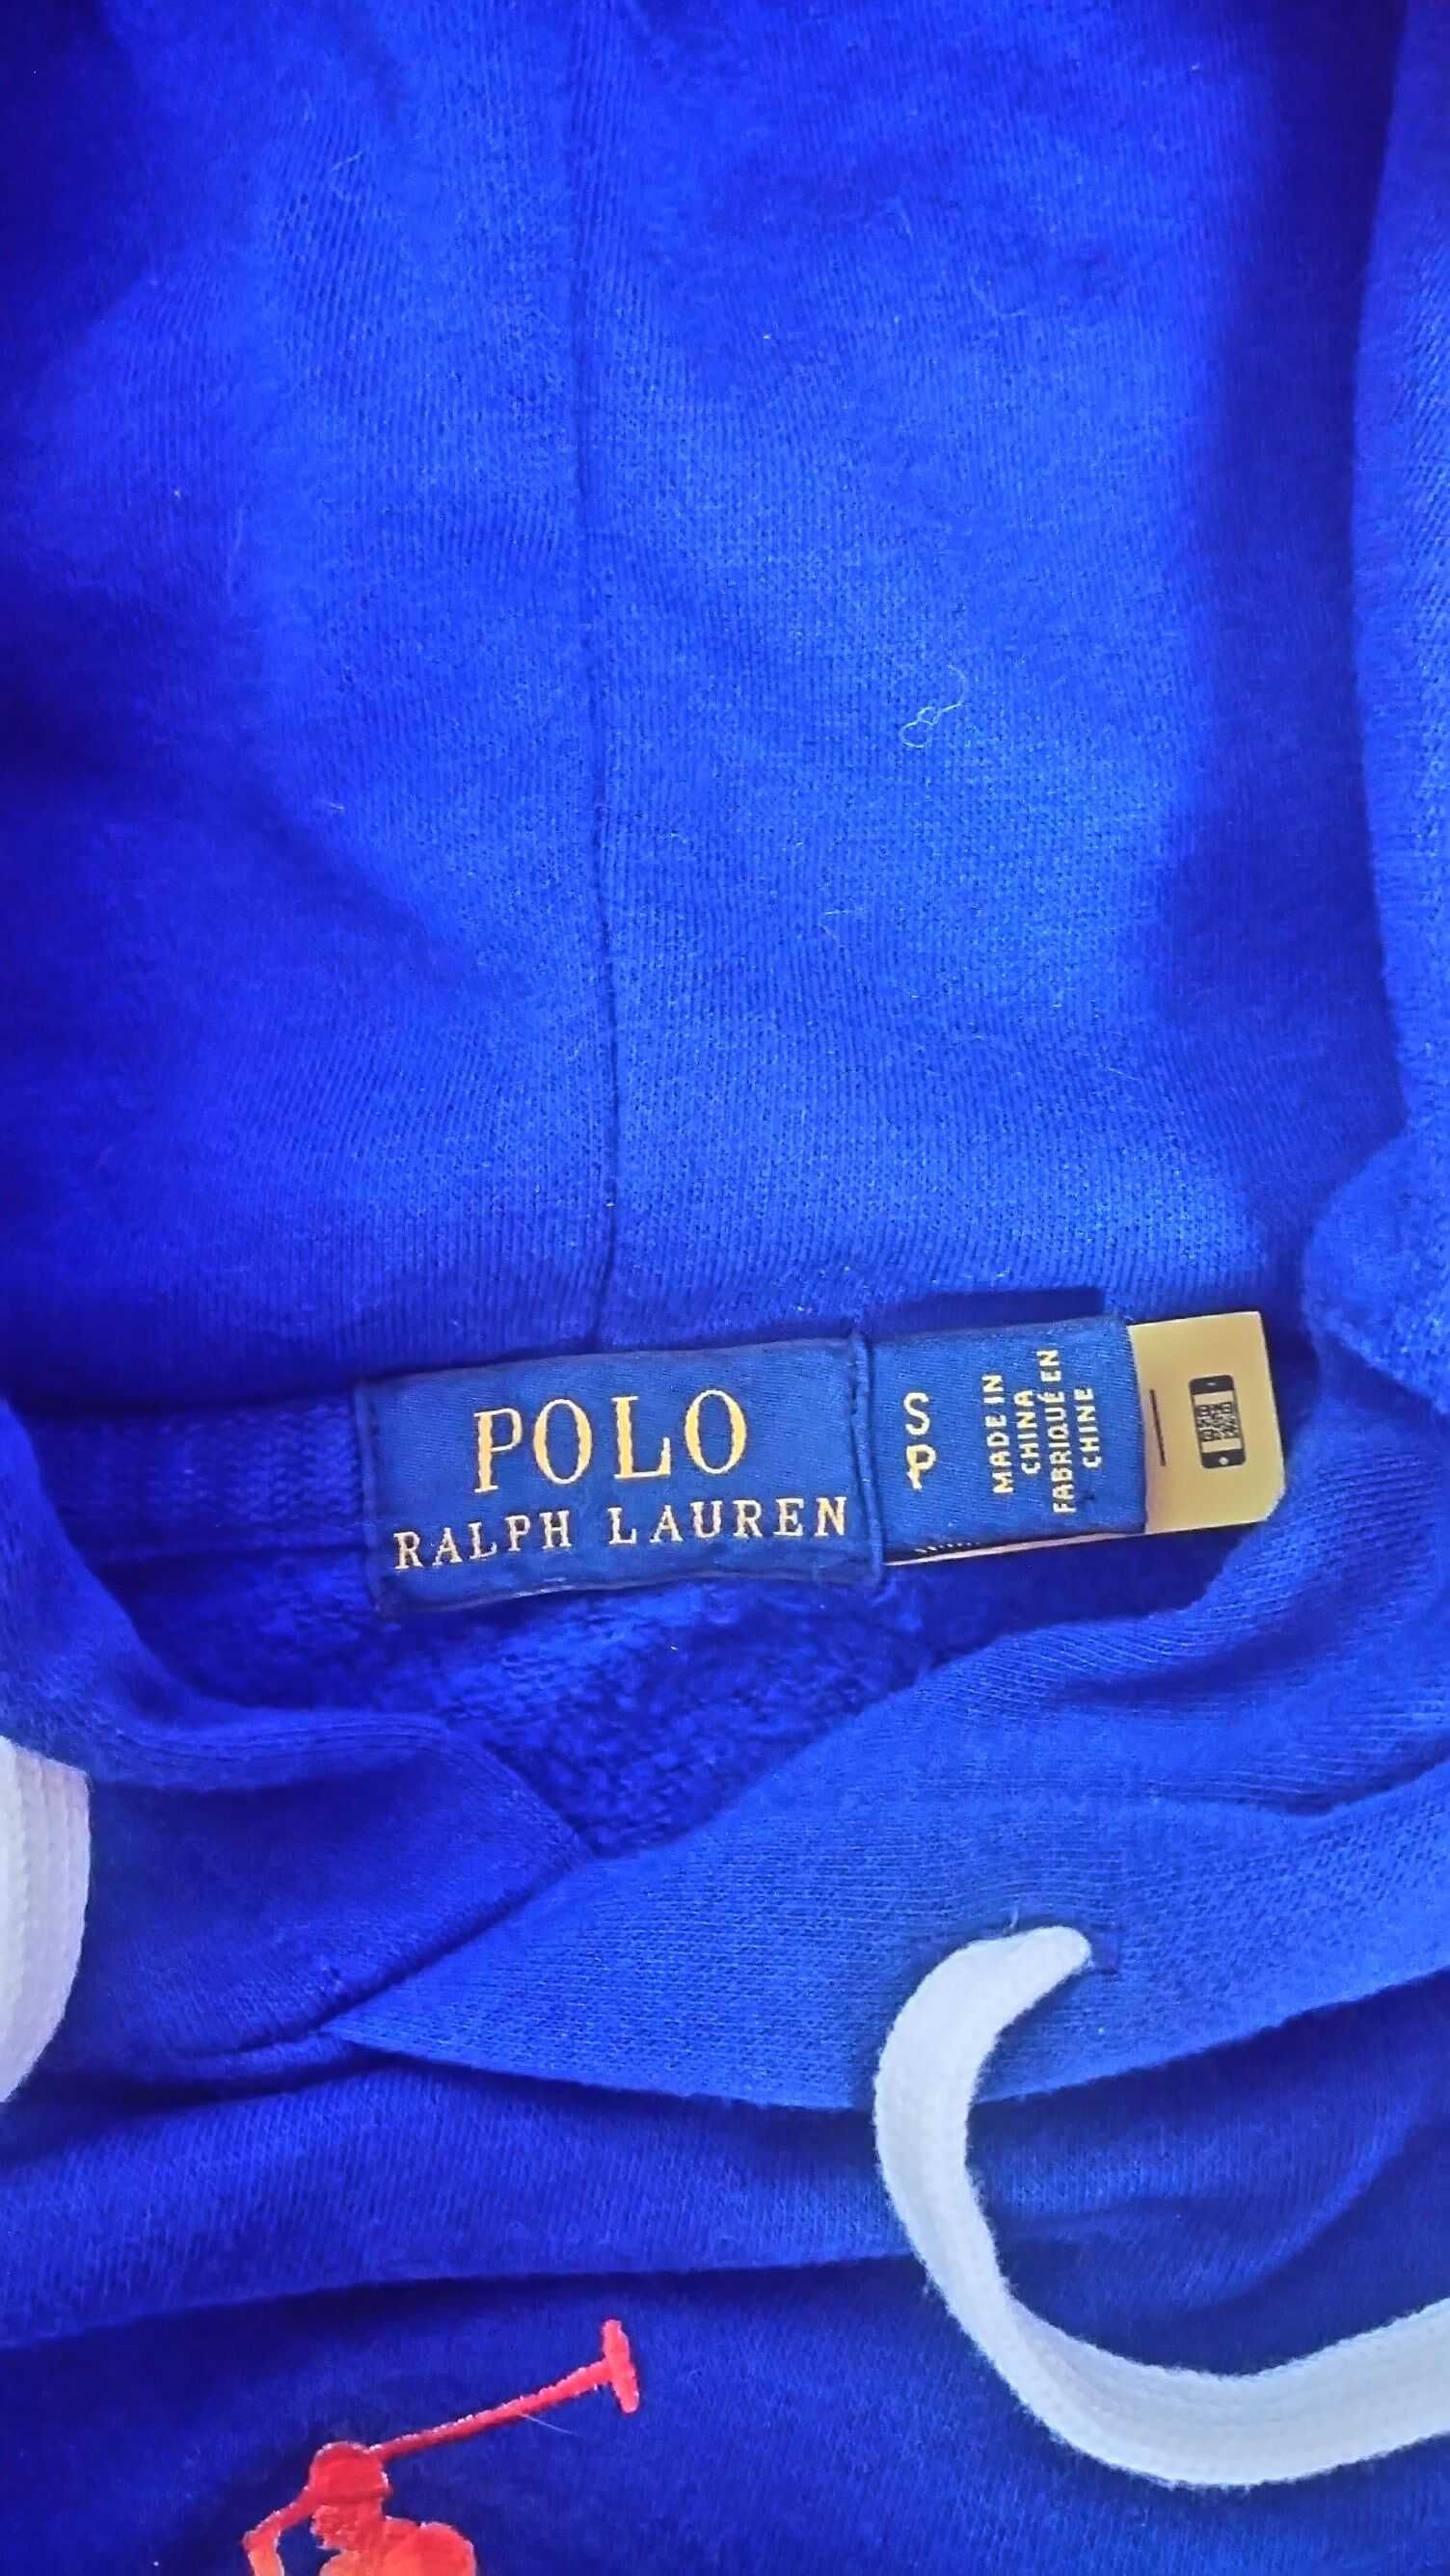 Bluza Polo Ralph Lauren. Nowa. Niebieska / Granatowa z kolorowym logo